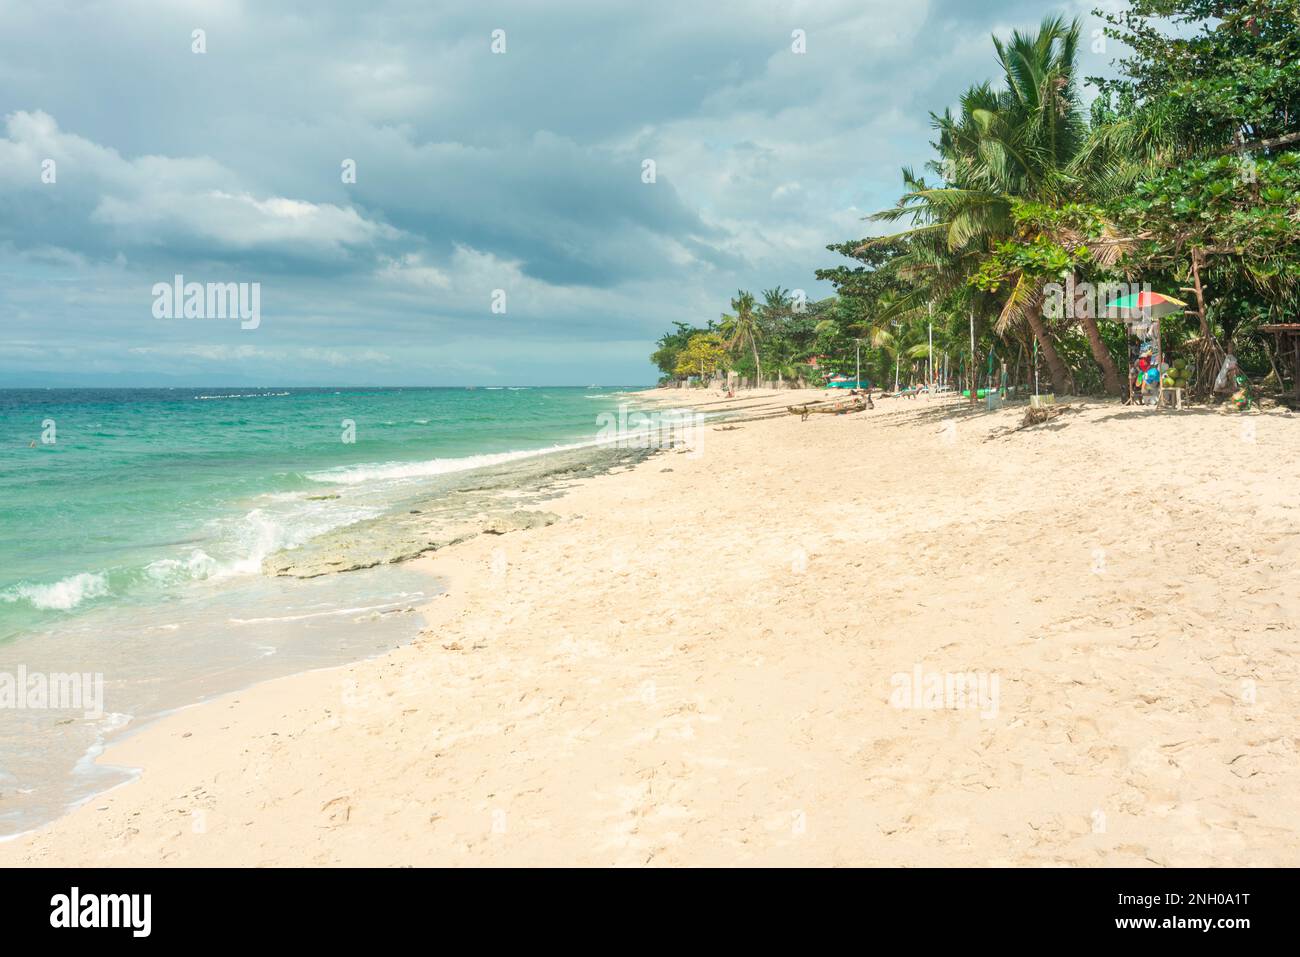 Wunderschöner feiner, weißer Sand des tropischen Paradiesstrands und Reiseziel, an der südwestlichen Spitze von Cebu. Beliebtes Resort zum Tauchen und Stockfoto